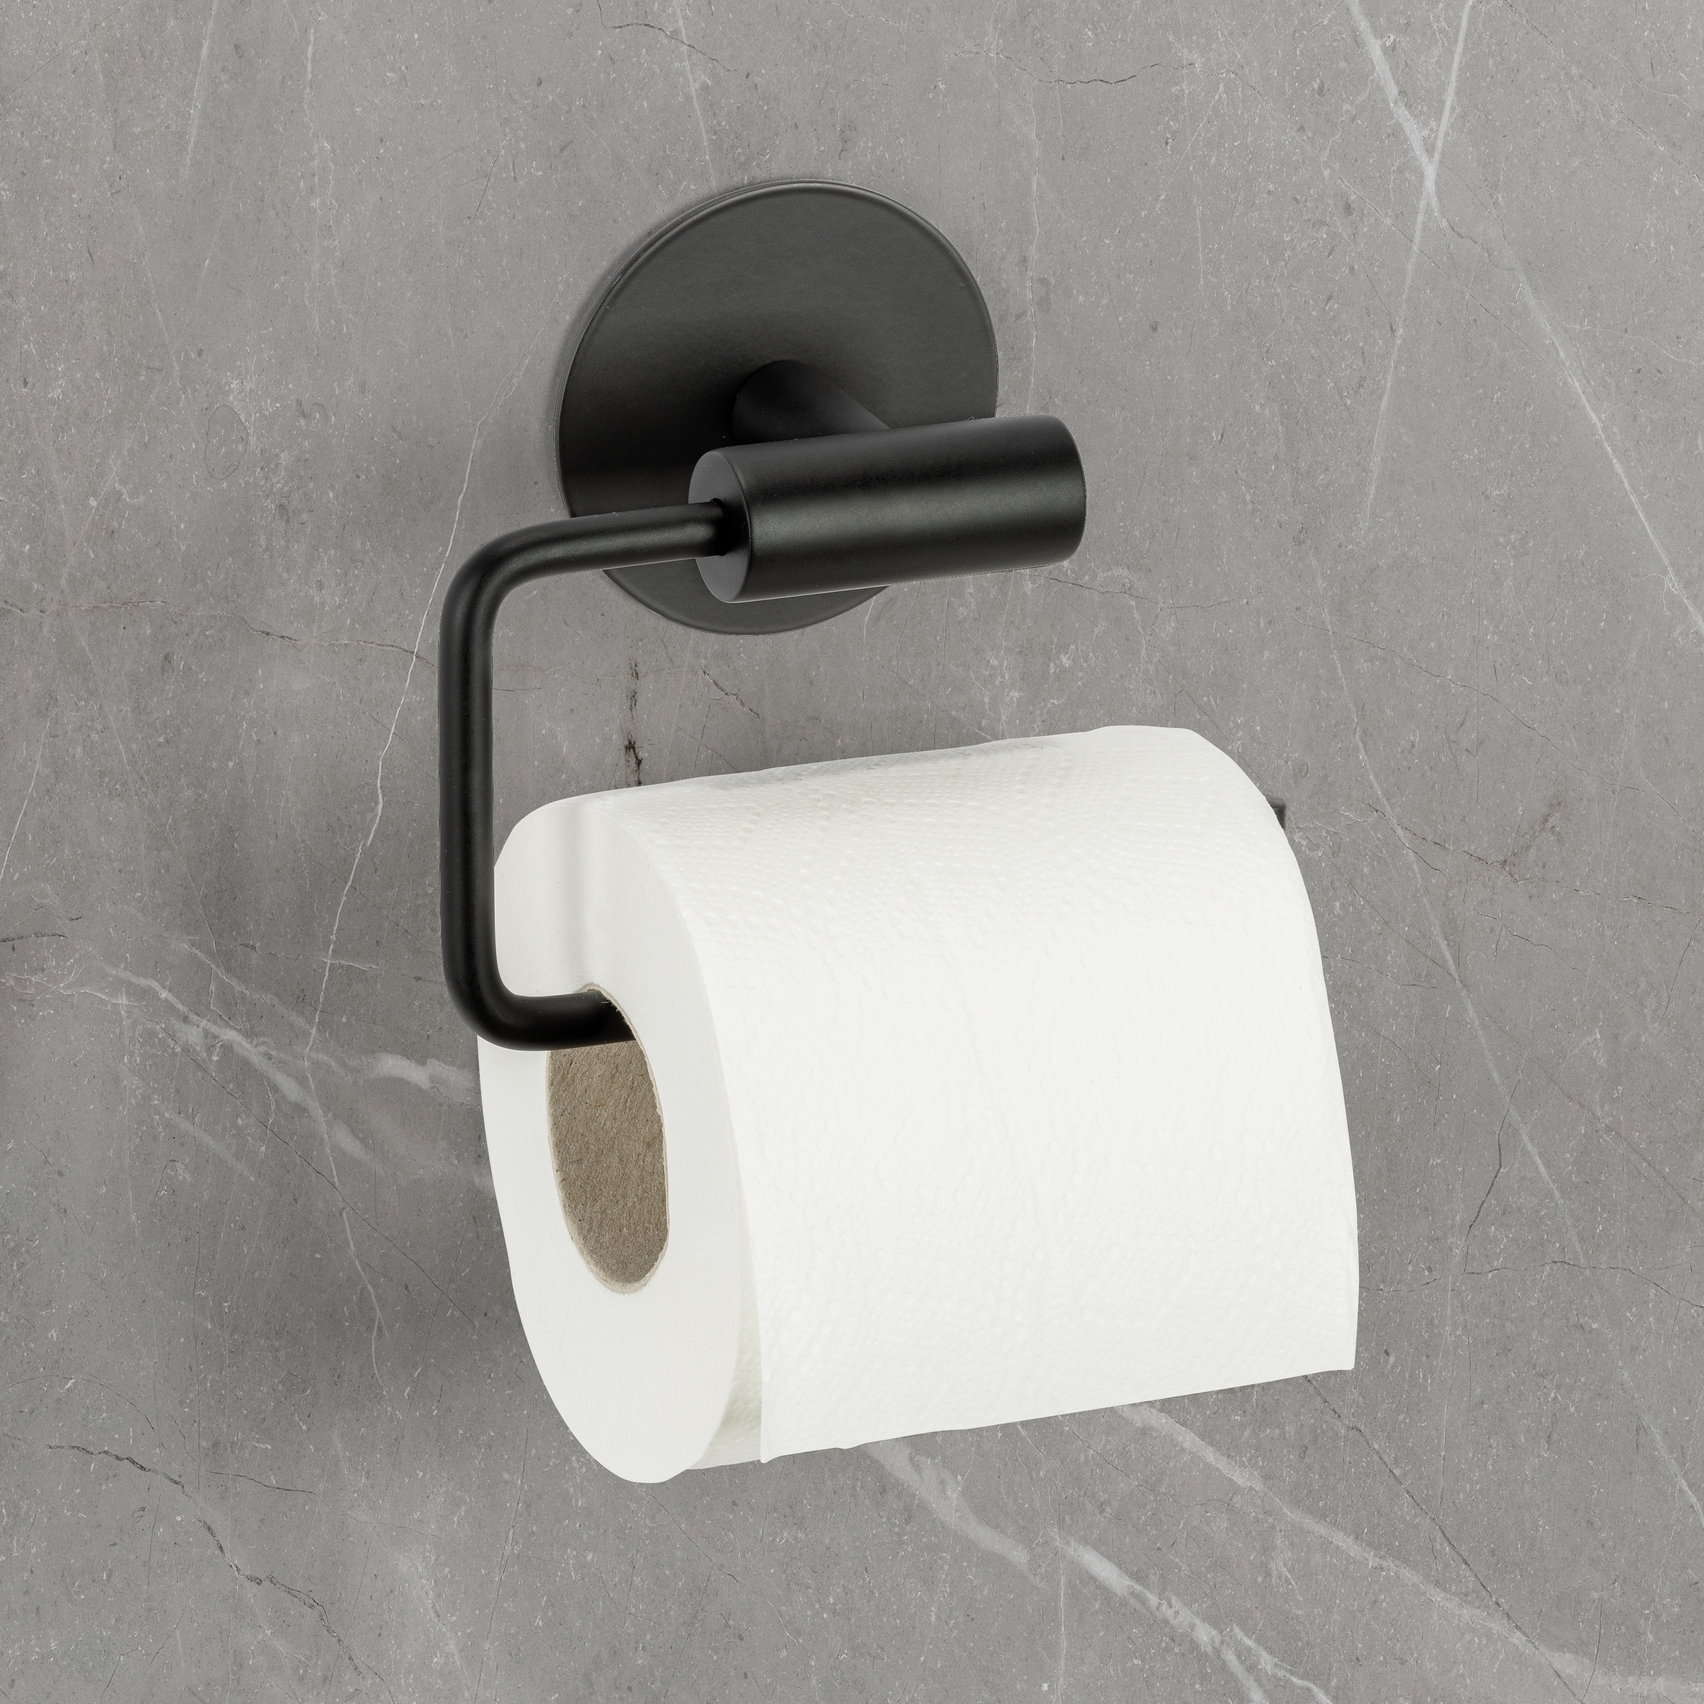 Schöner Wohnen Toilettenpapierhalter Meleto, schwarz